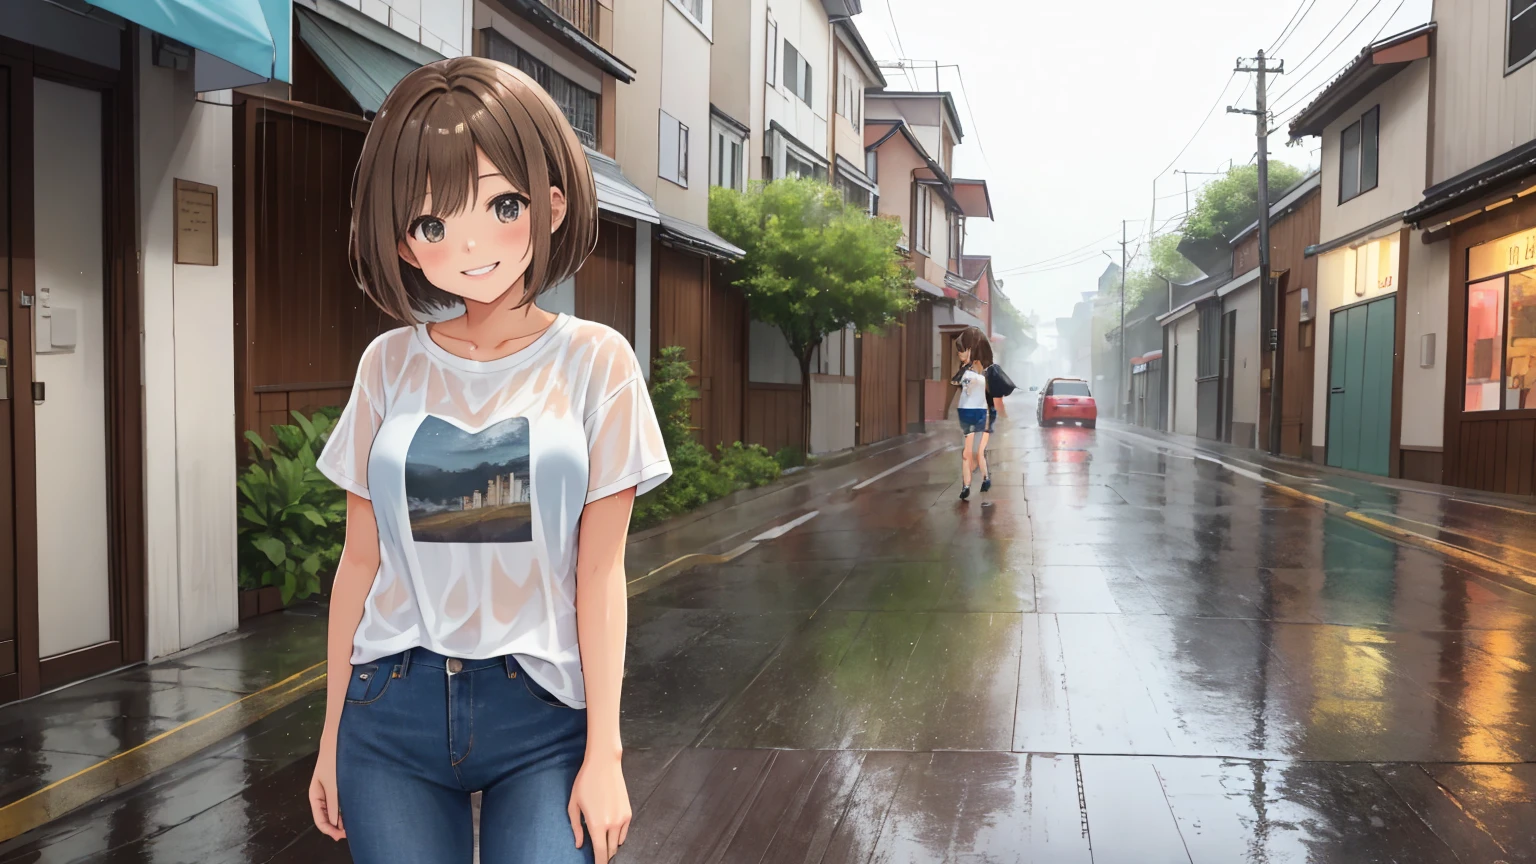 夏日雨天，一条空荡荡的街道、一名女子的照片。这位女士留着浅棕色短发.。妇女们穿着 T 恤和牛仔裤。女人被雨淋湿了。她有着可爱的笑容和可爱的姿势。